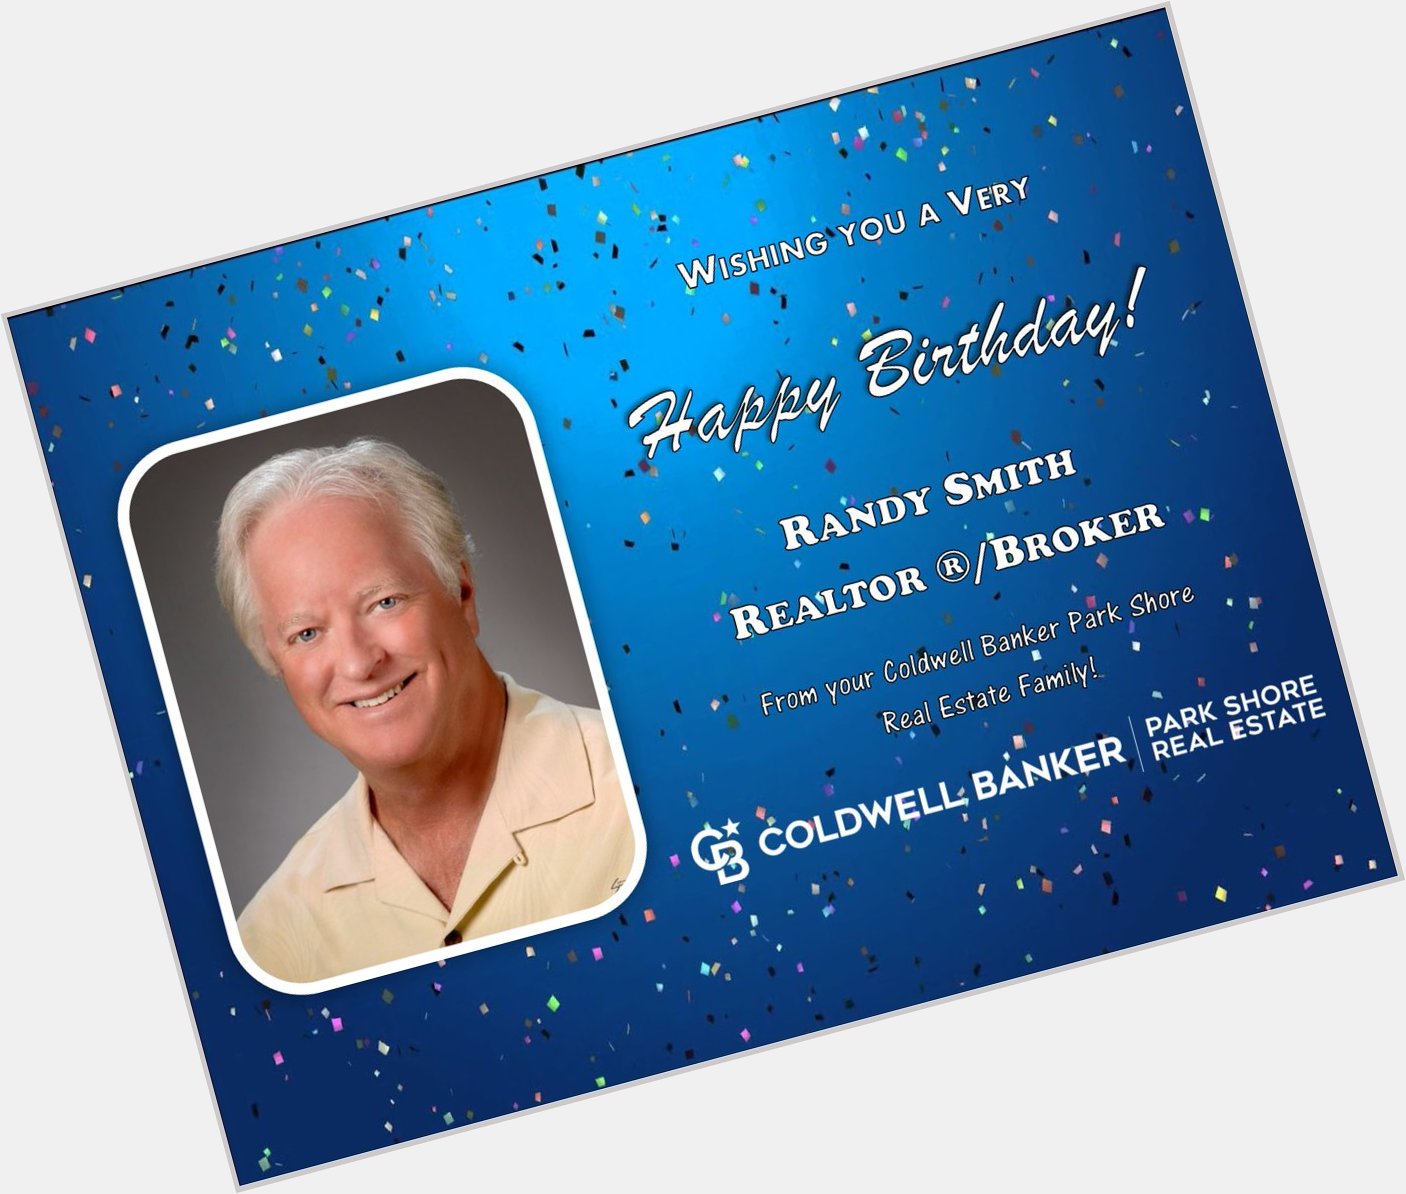 We wish you a Happy Birthday Randy Smith! 